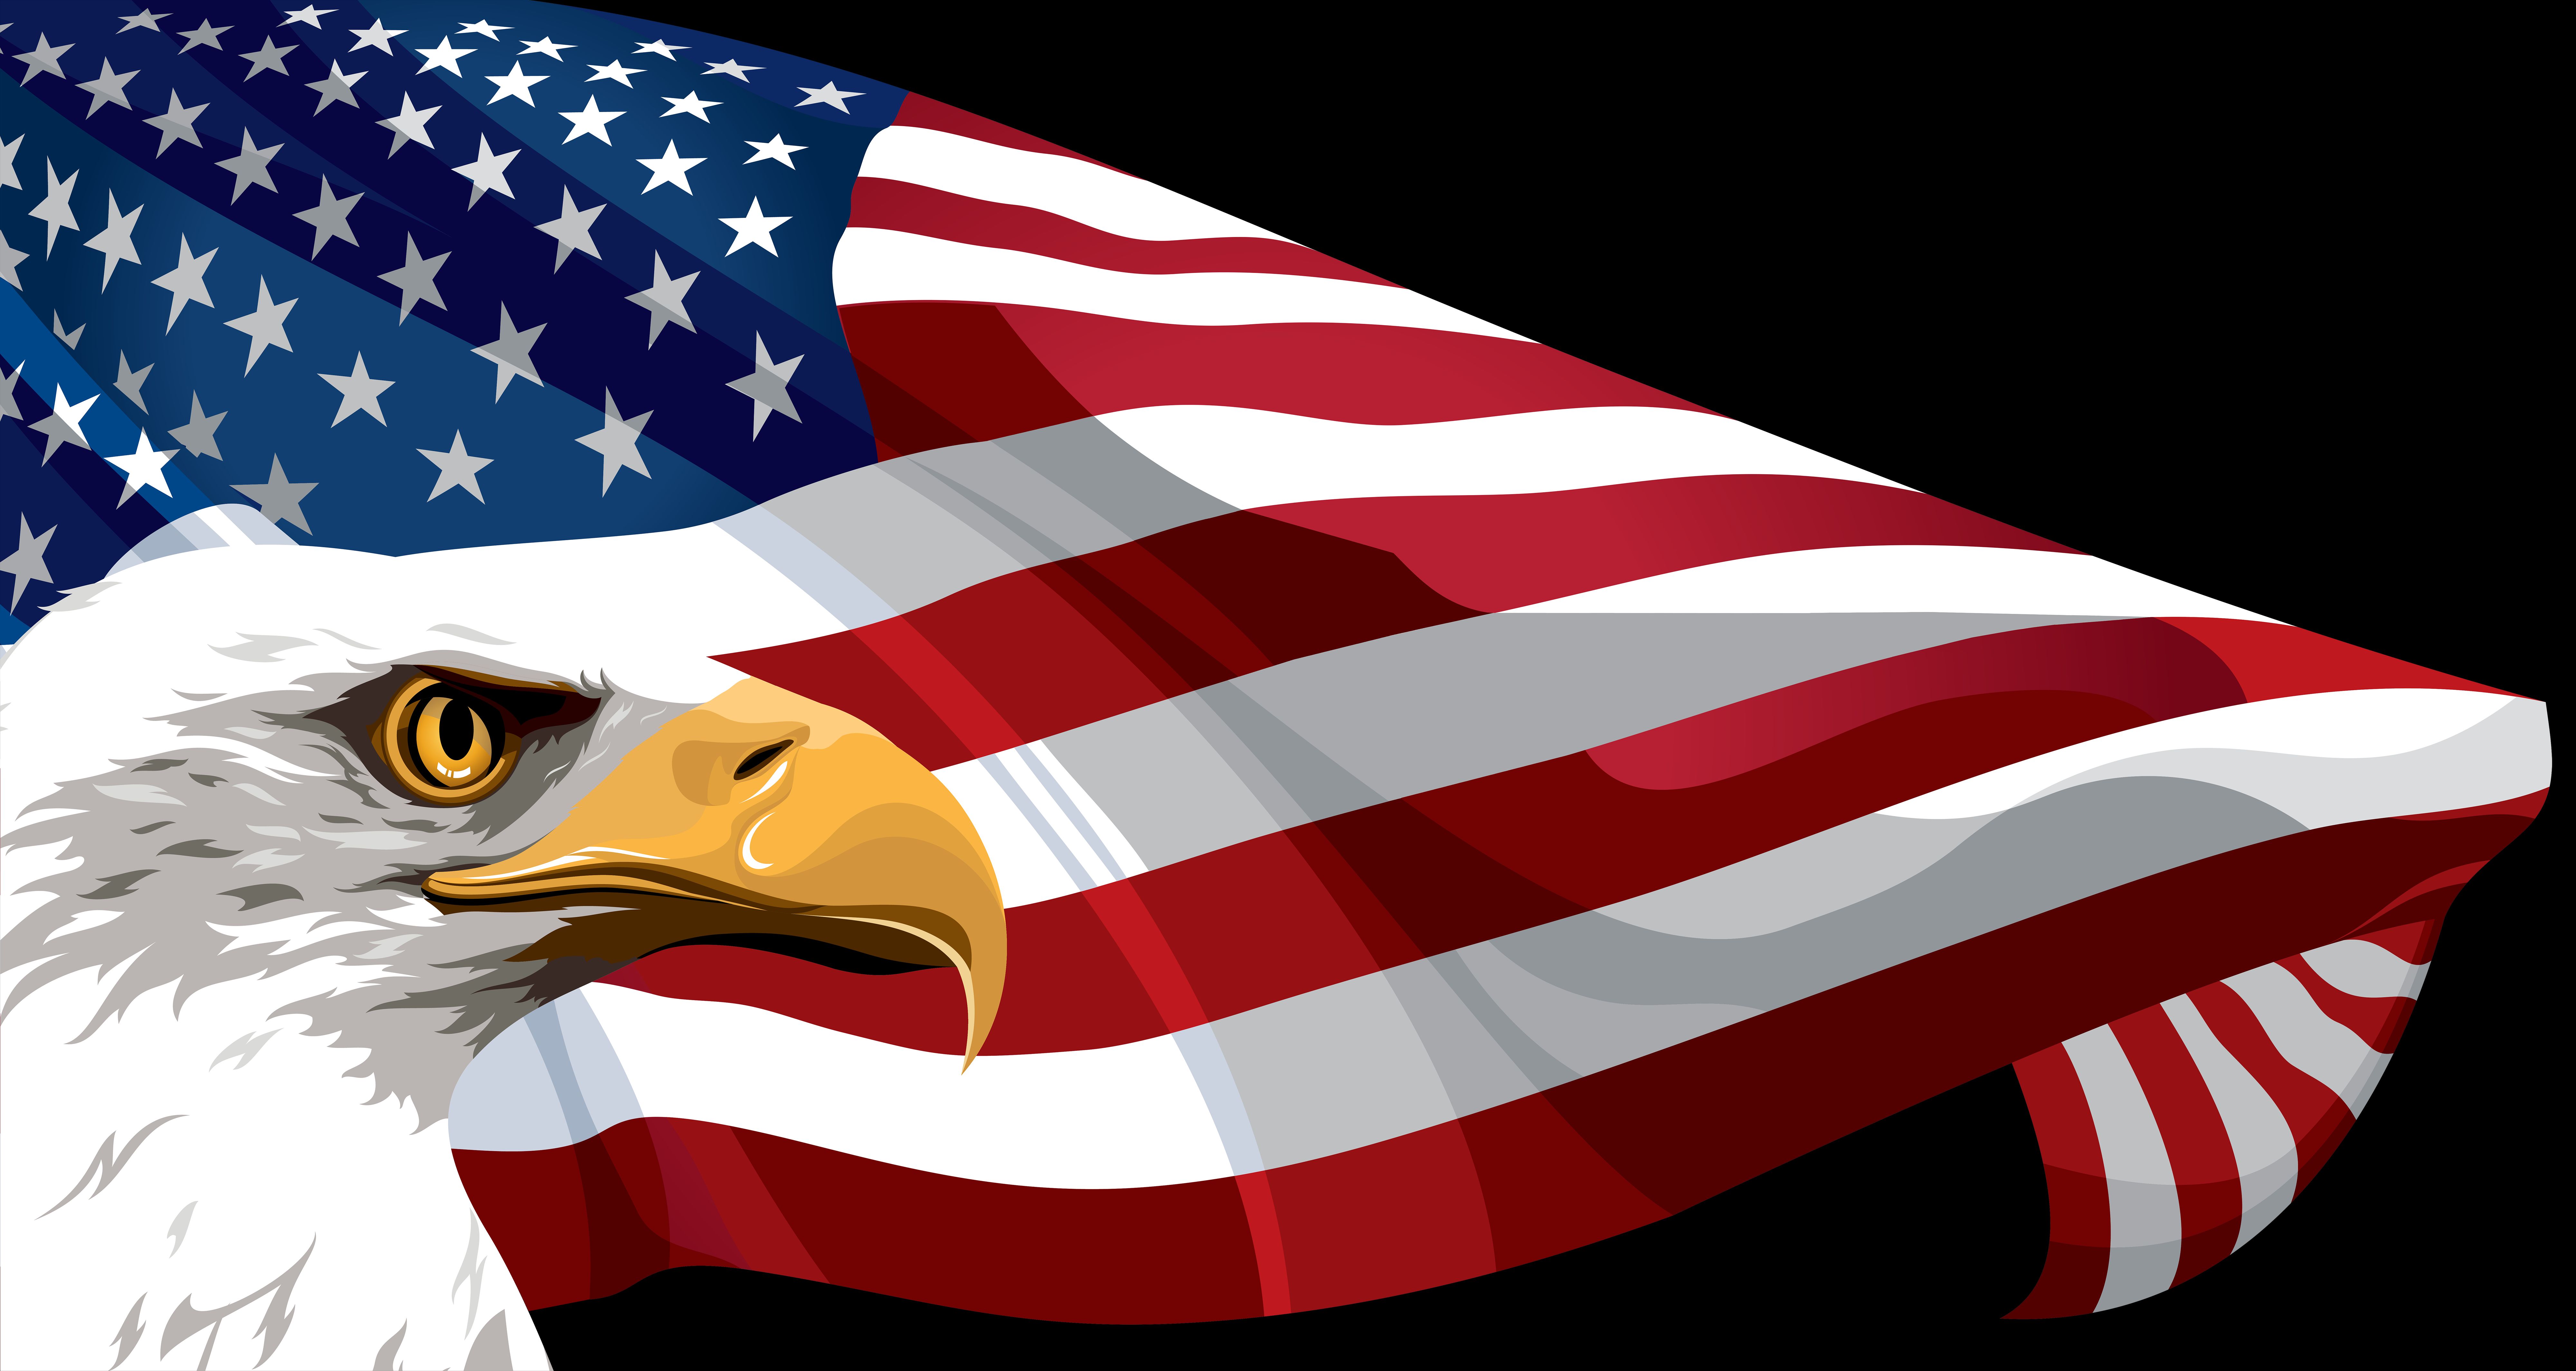 Скачать обои бесплатно Флаги, Орел, Флаг, Сделано Человеком, Американский Флаг картинка на рабочий стол ПК